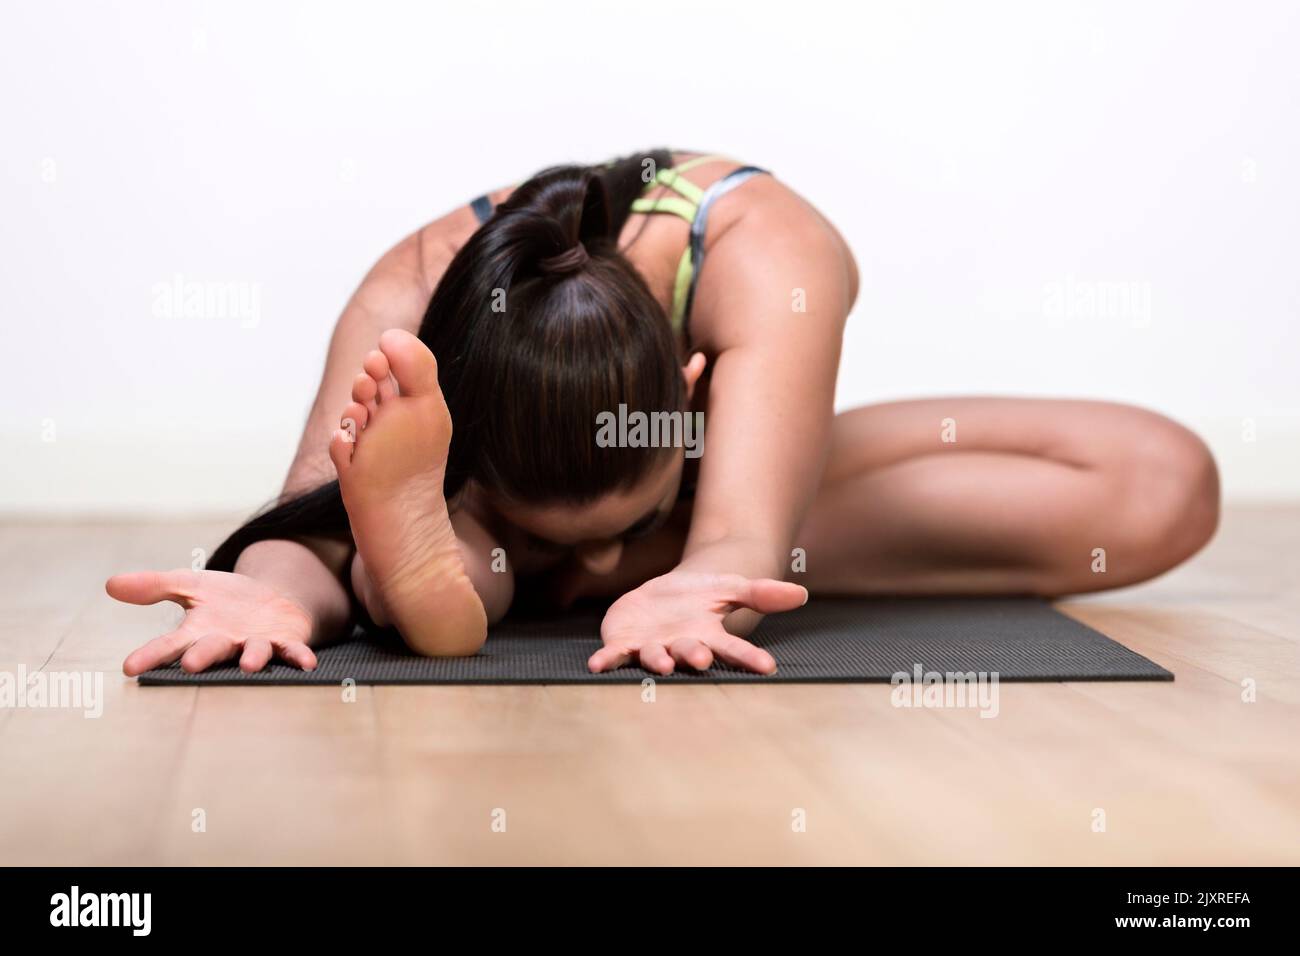 Una mujer soltera, caucásica, de mediados de 30 años de edad en yoga posa contra una pared blanca Foto de stock